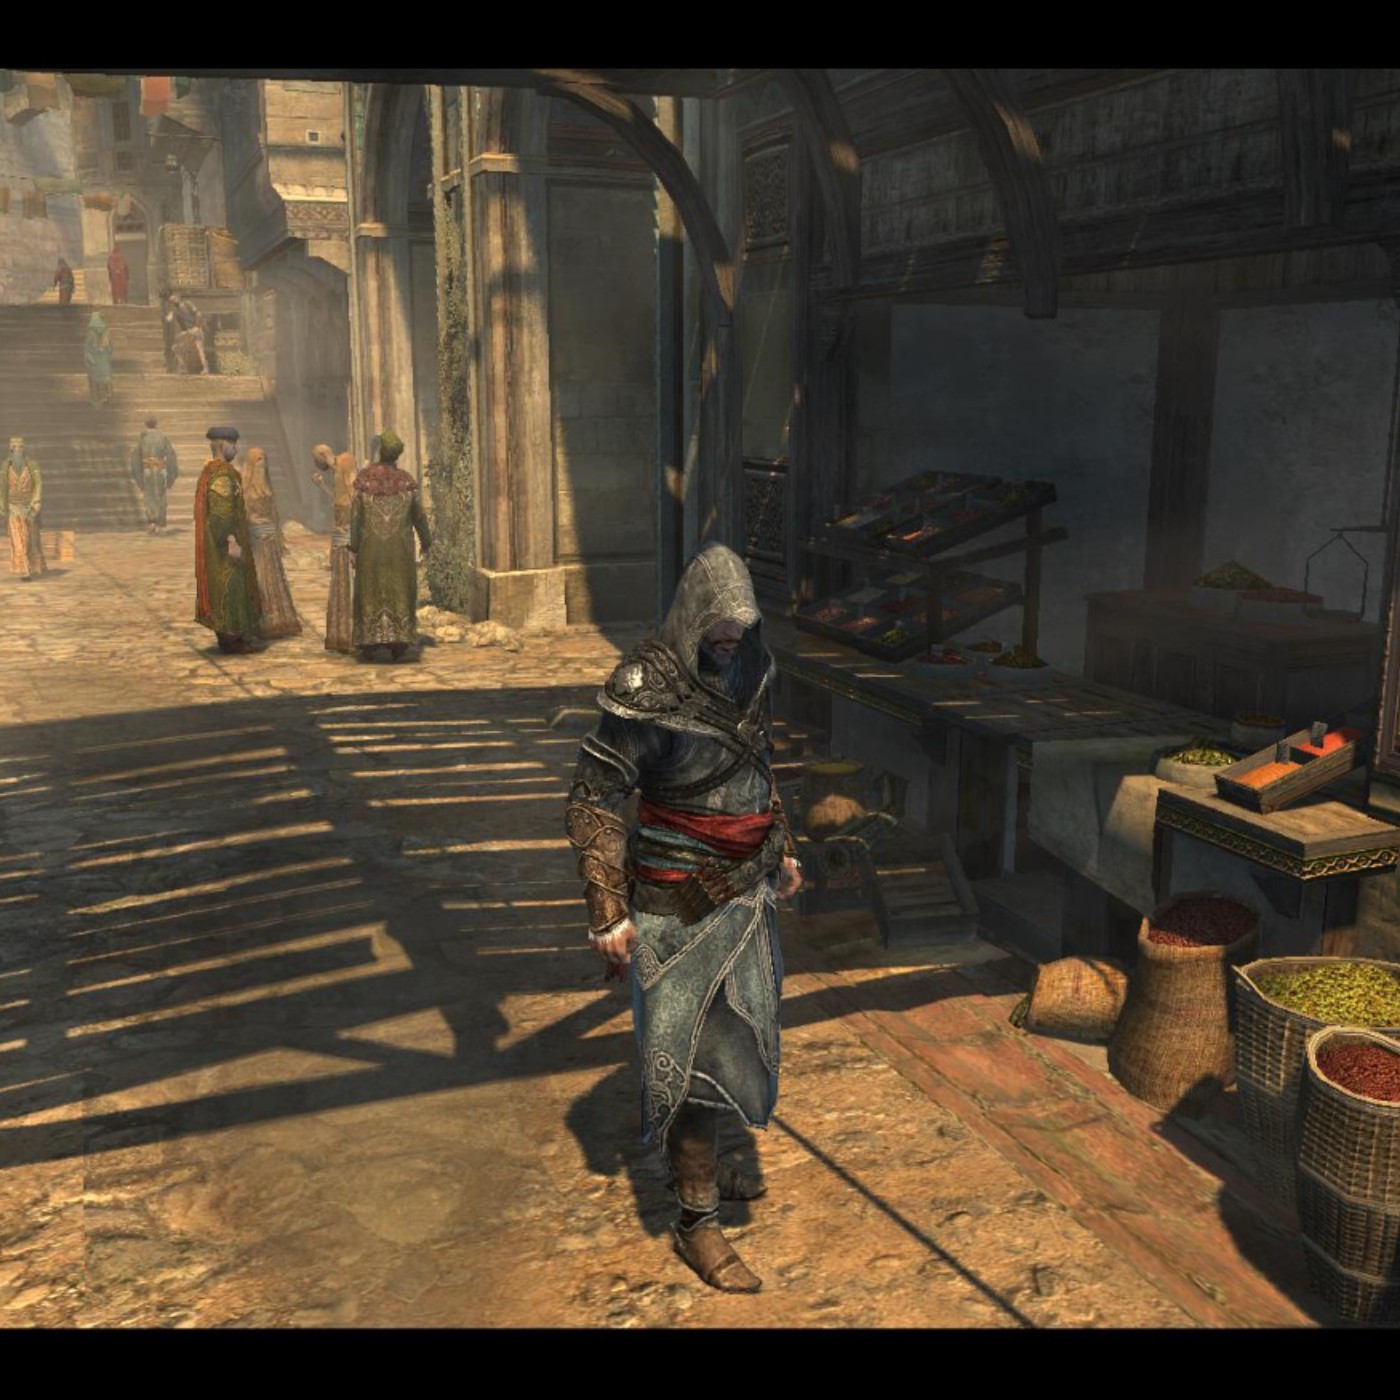 O multiplayer de Assassin's Creed: Revelations